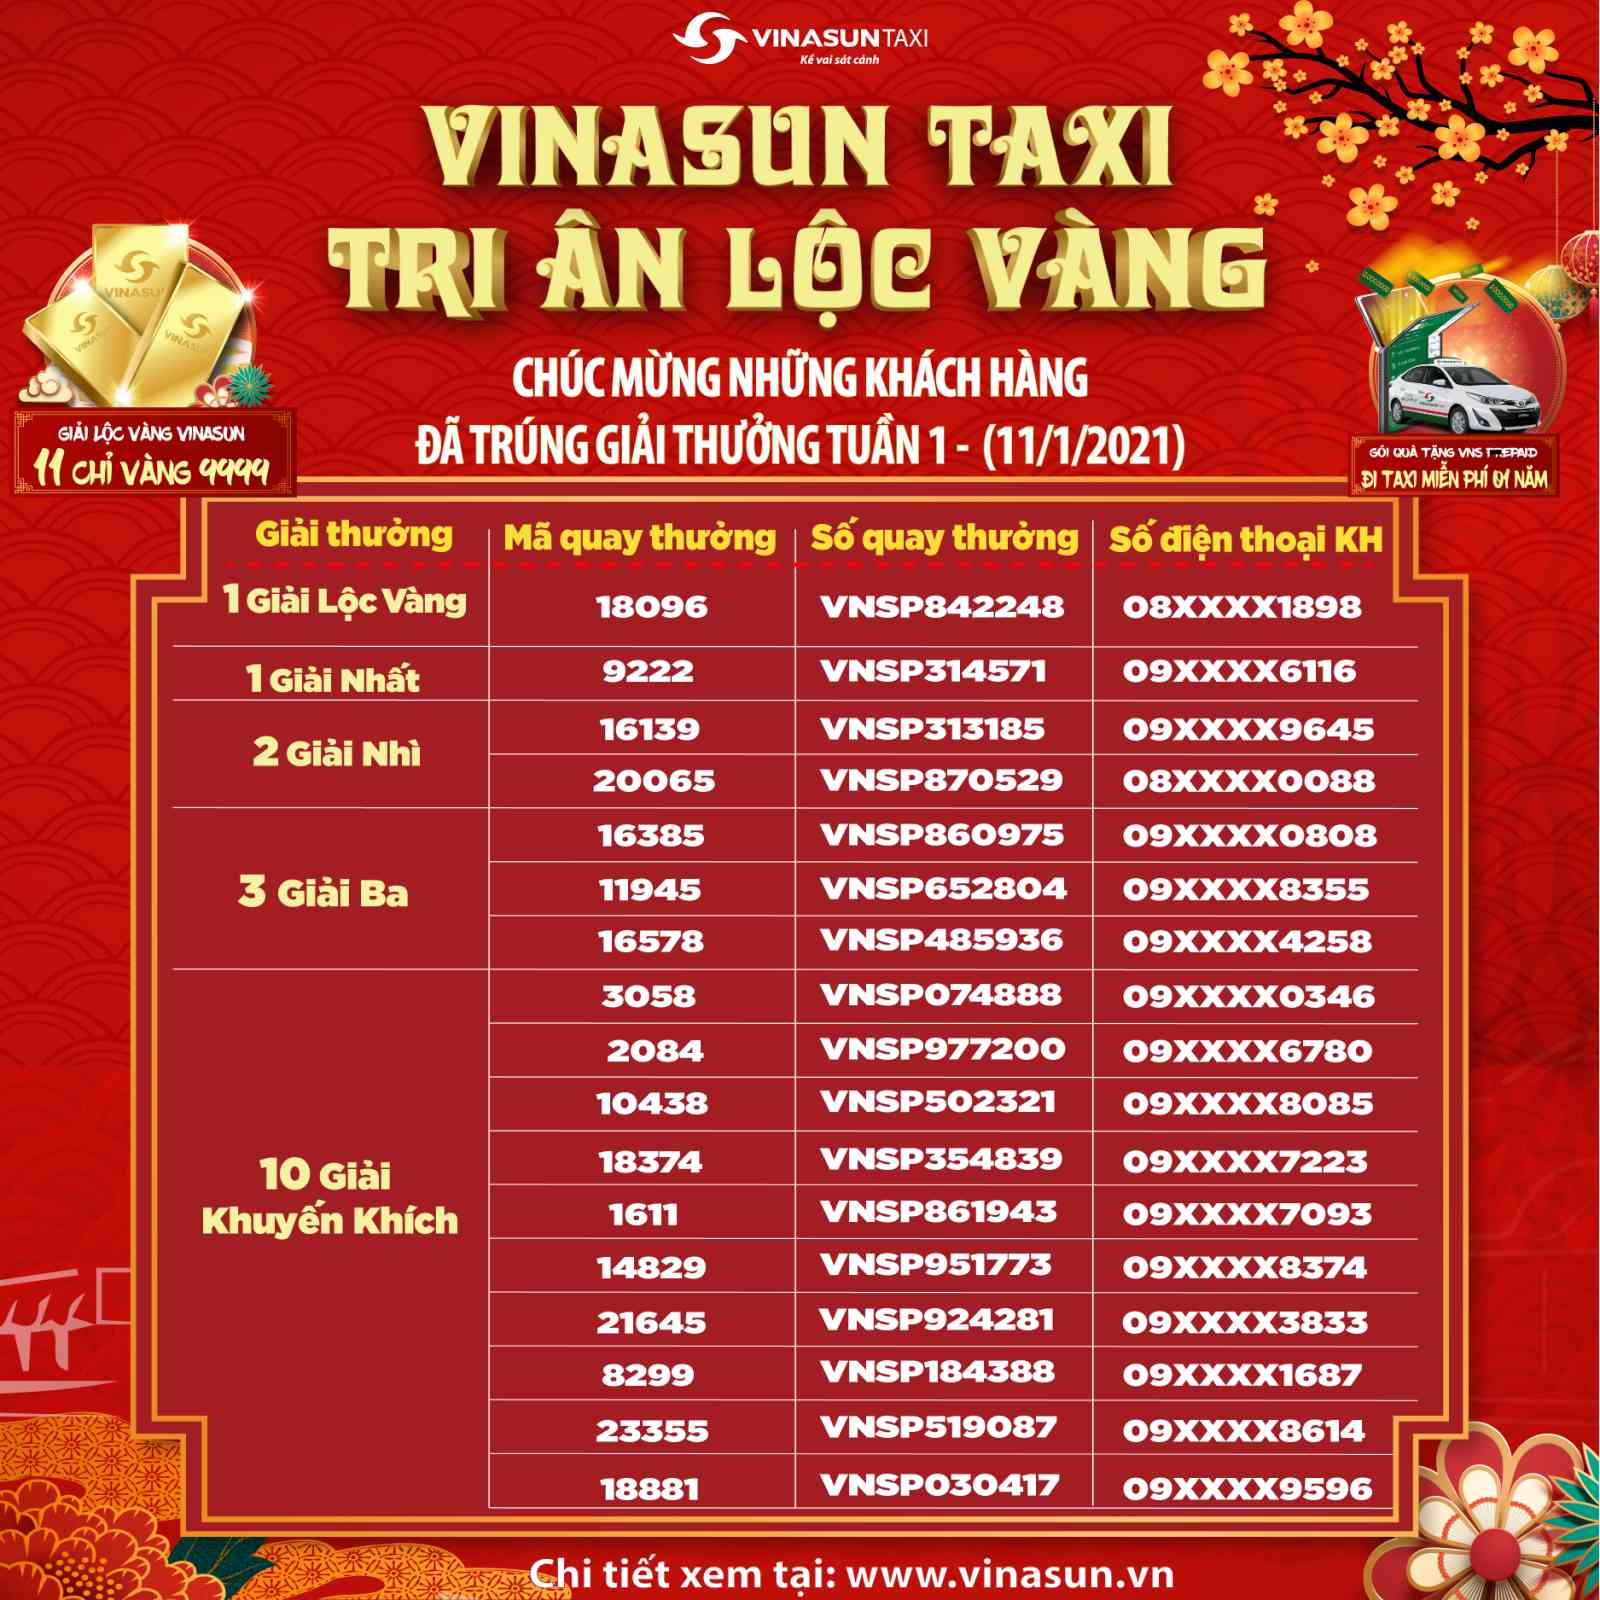 Kết quả trúng thưởng chương trình Vinasun Taxi - Tri Ân Lộc Vàng - Tuần 1